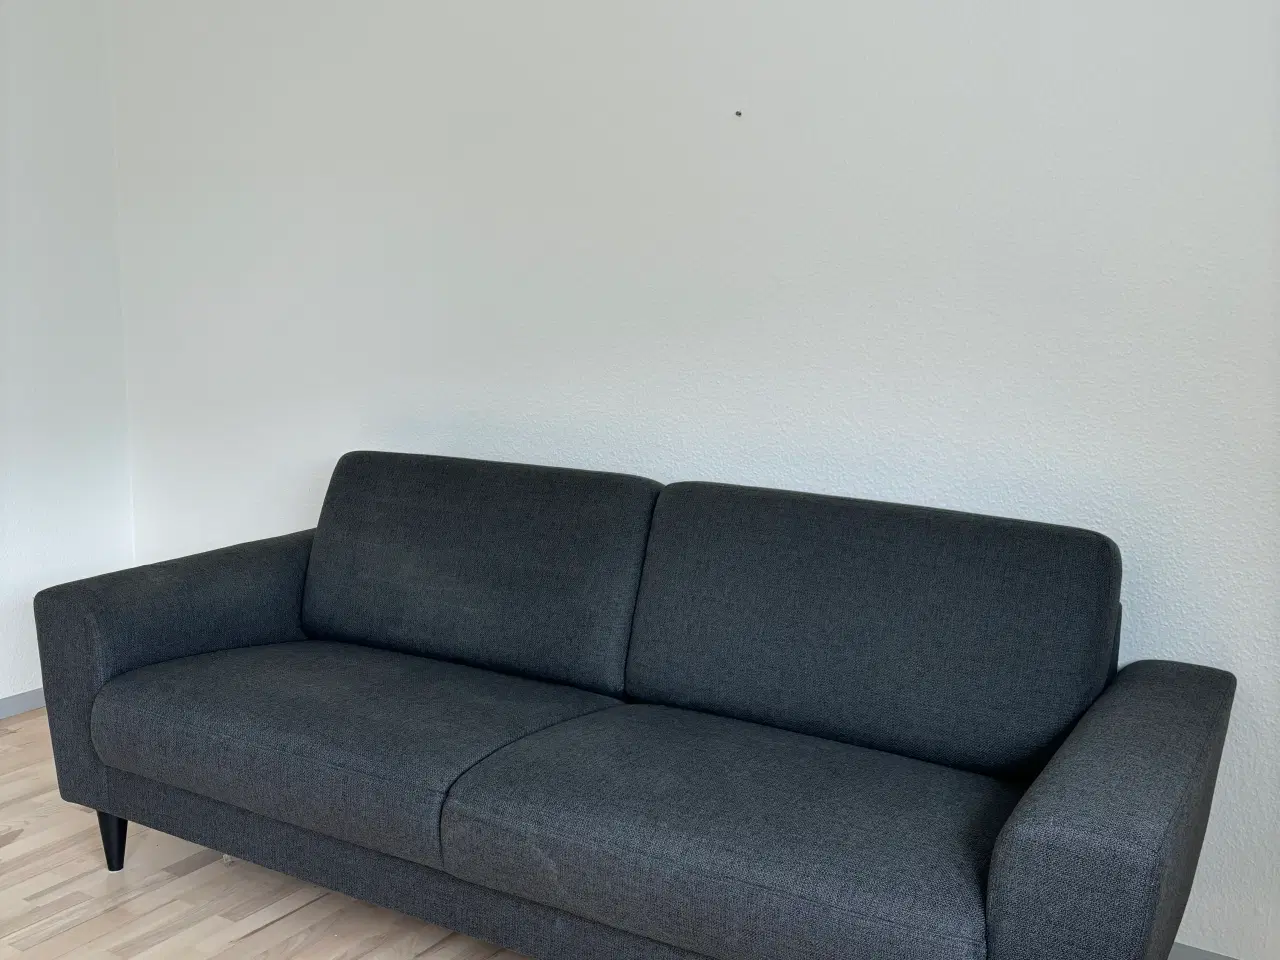 Billede 2 - 1 år gammel sofa sælges. Befinder sig i Gråsten 